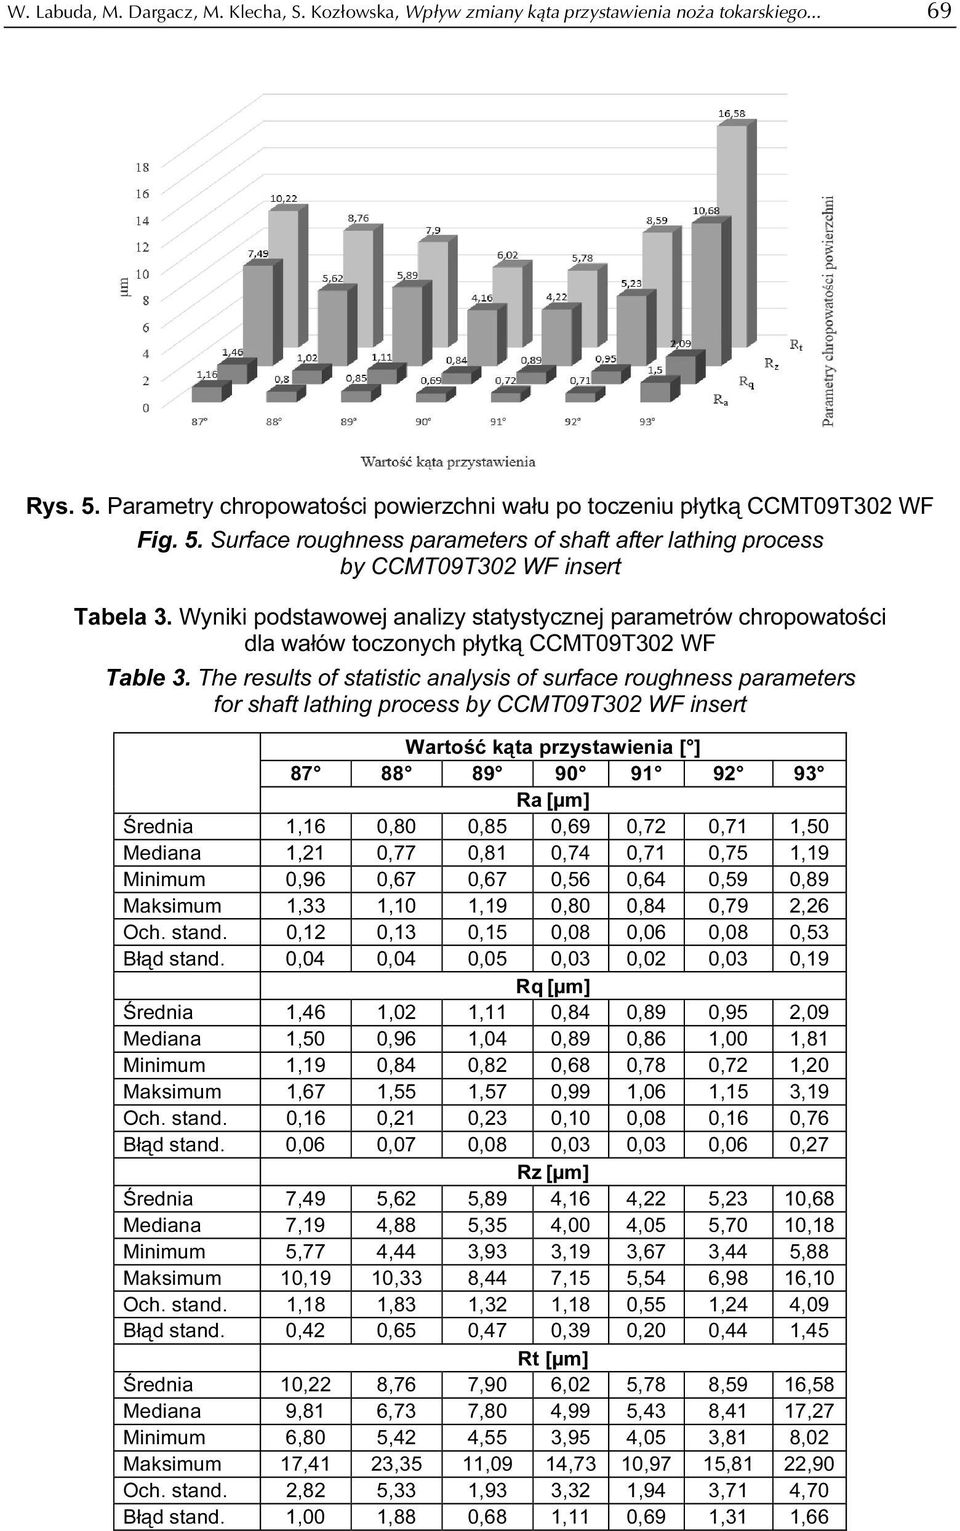 Wyniki podstawowej analizy statystycznej parametrów chropowatości dla wałów toczonych płytką CCMT09T302 WF Table 3.